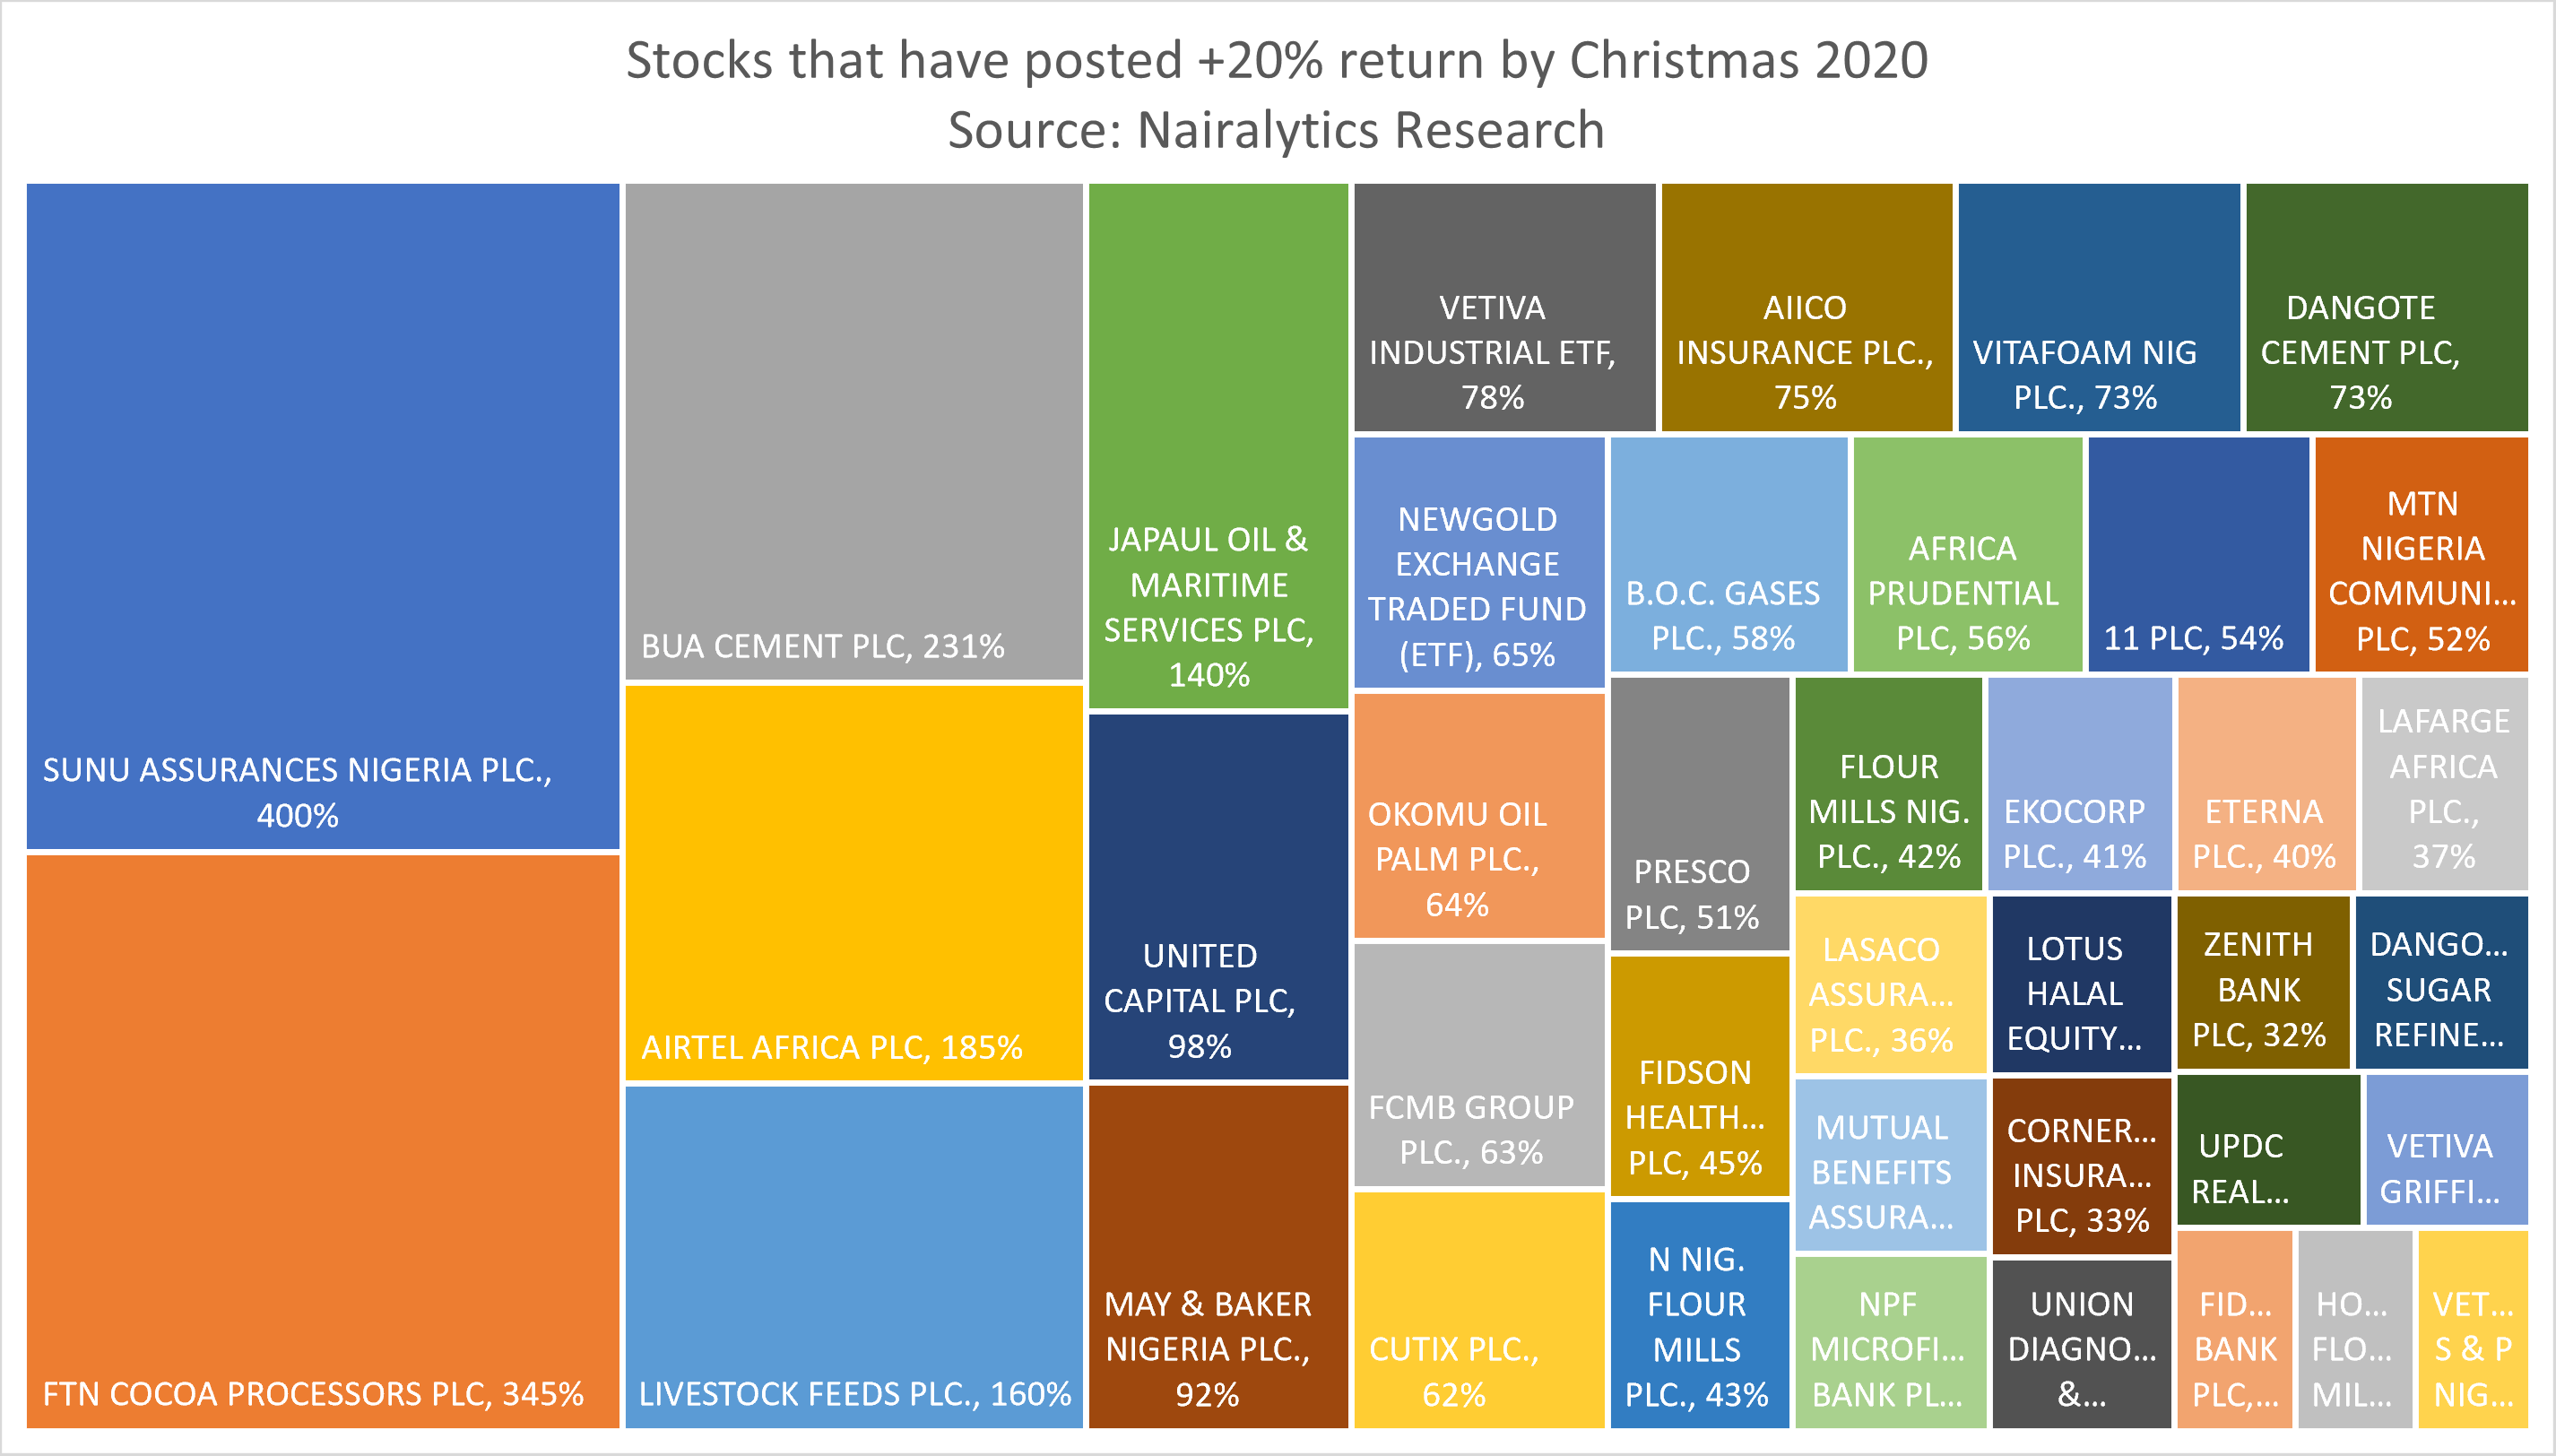 Top 5 stocks on Christmas day